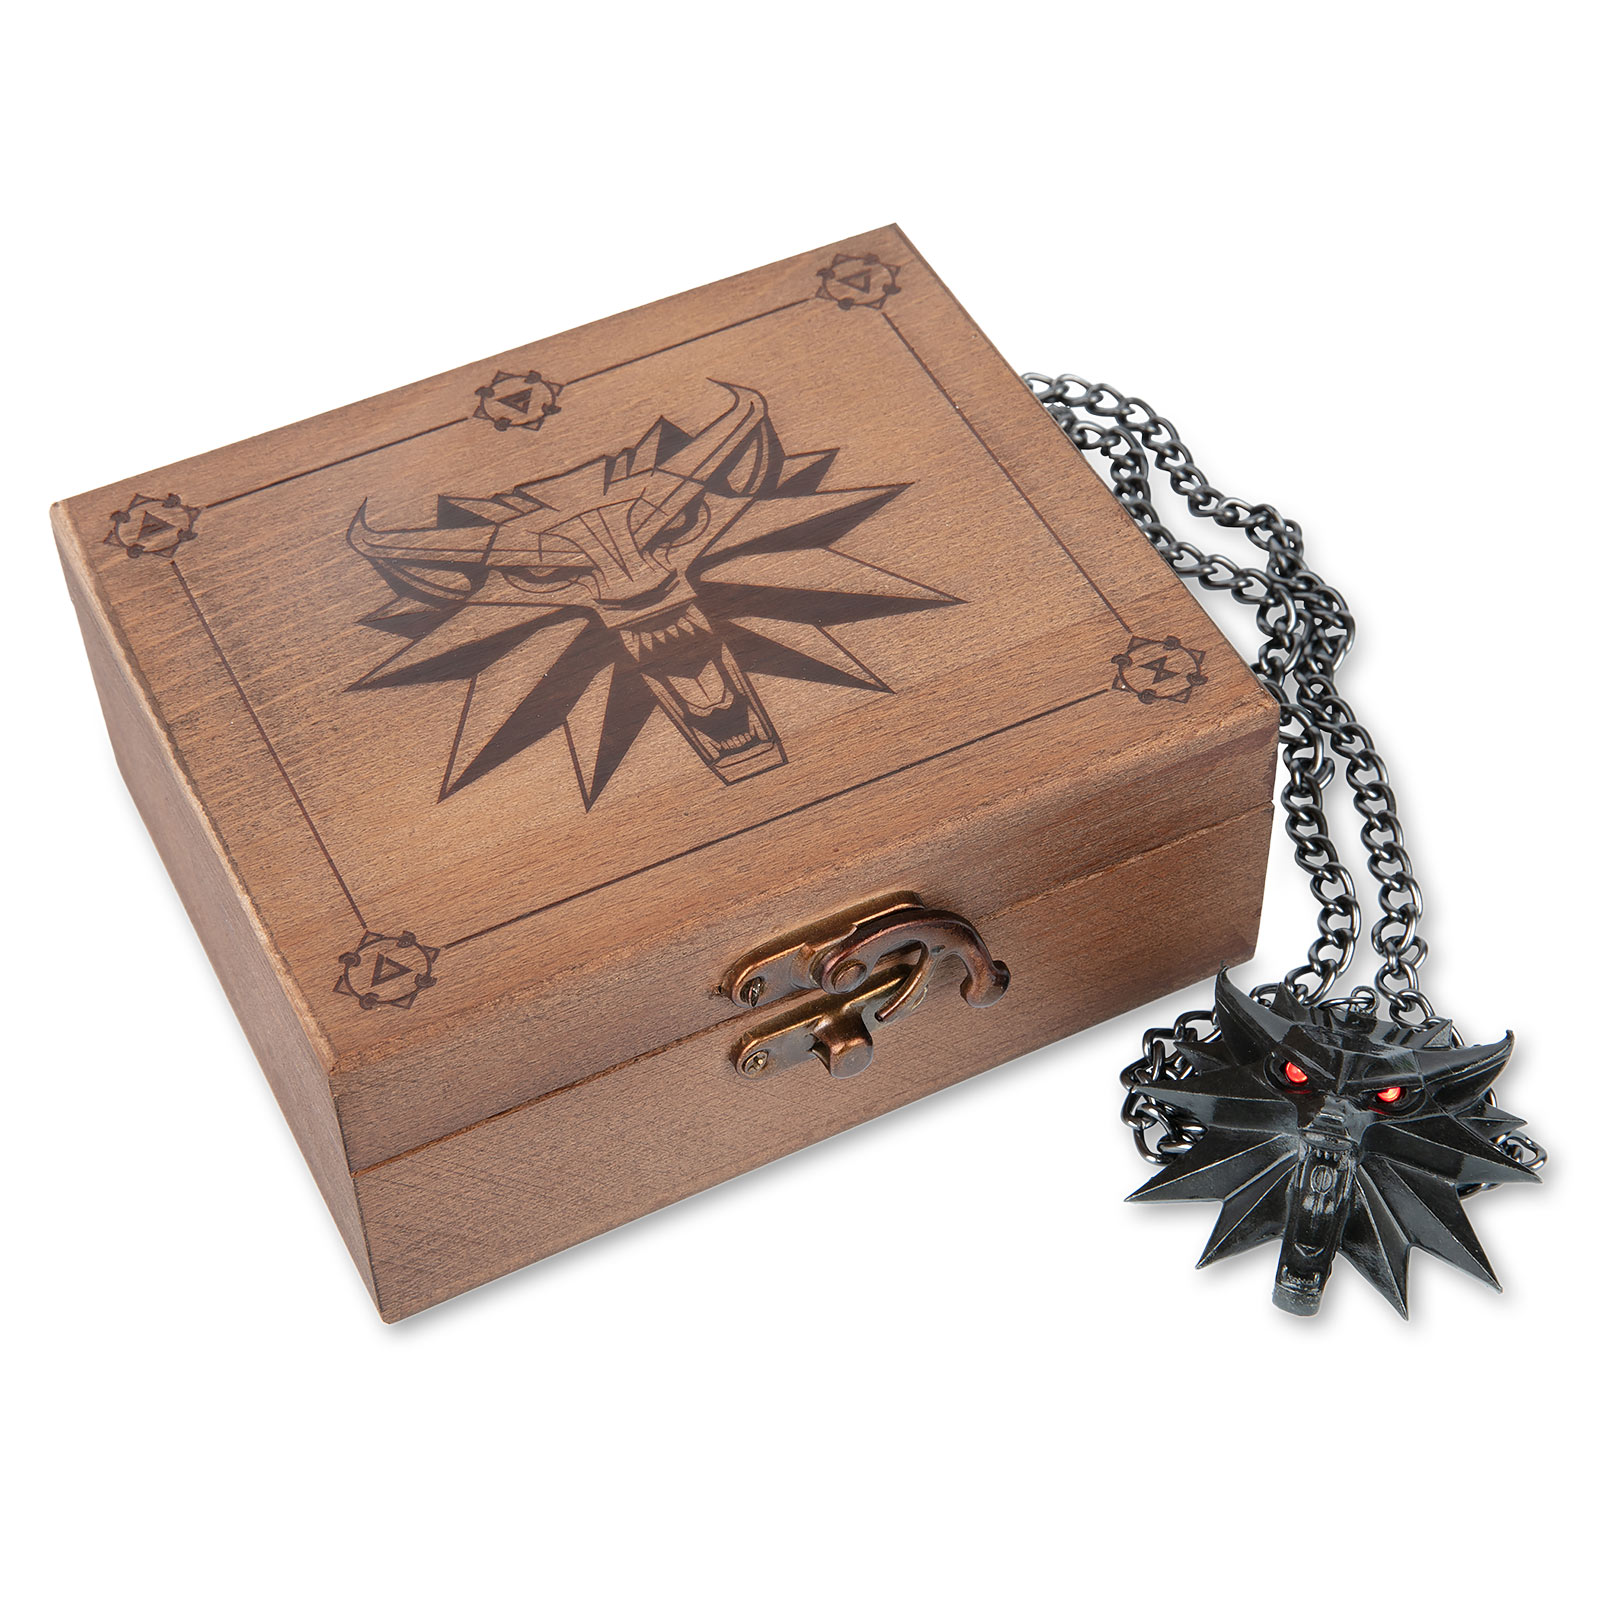 Witcher - Médaillon Wild Hunt avec yeux LED dans une boîte cadeau